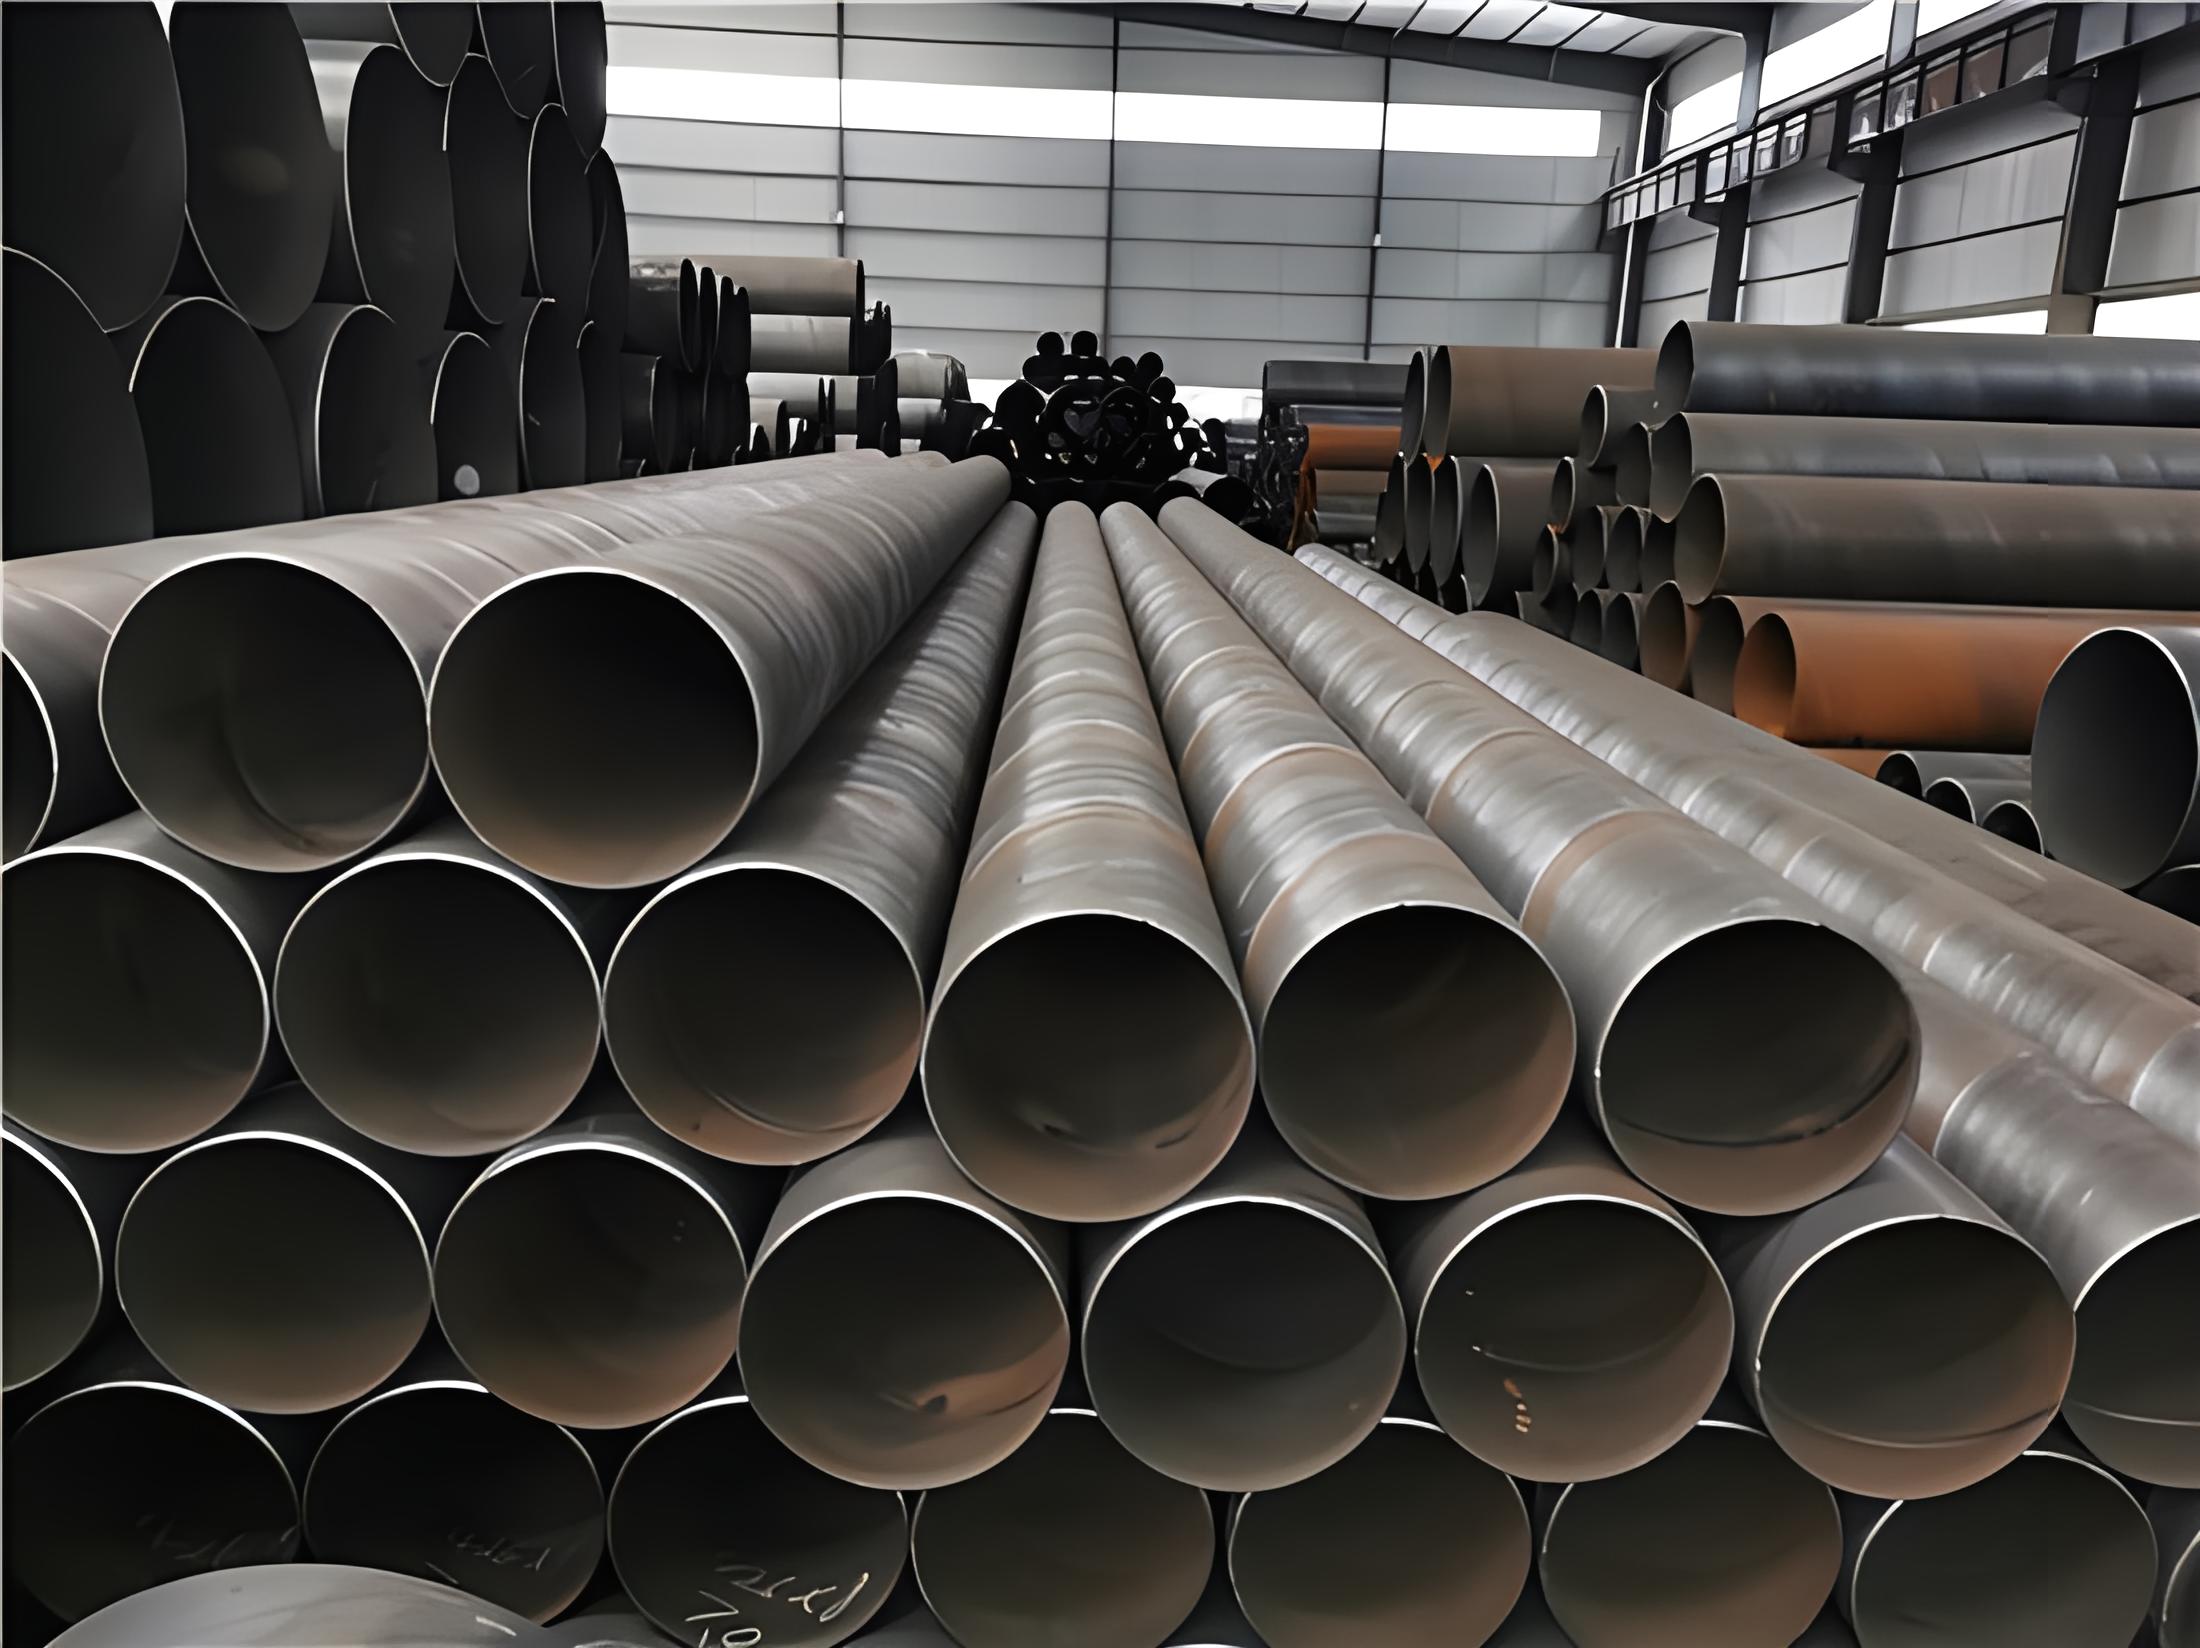 柳州螺旋钢管现代工业建设的坚实基石